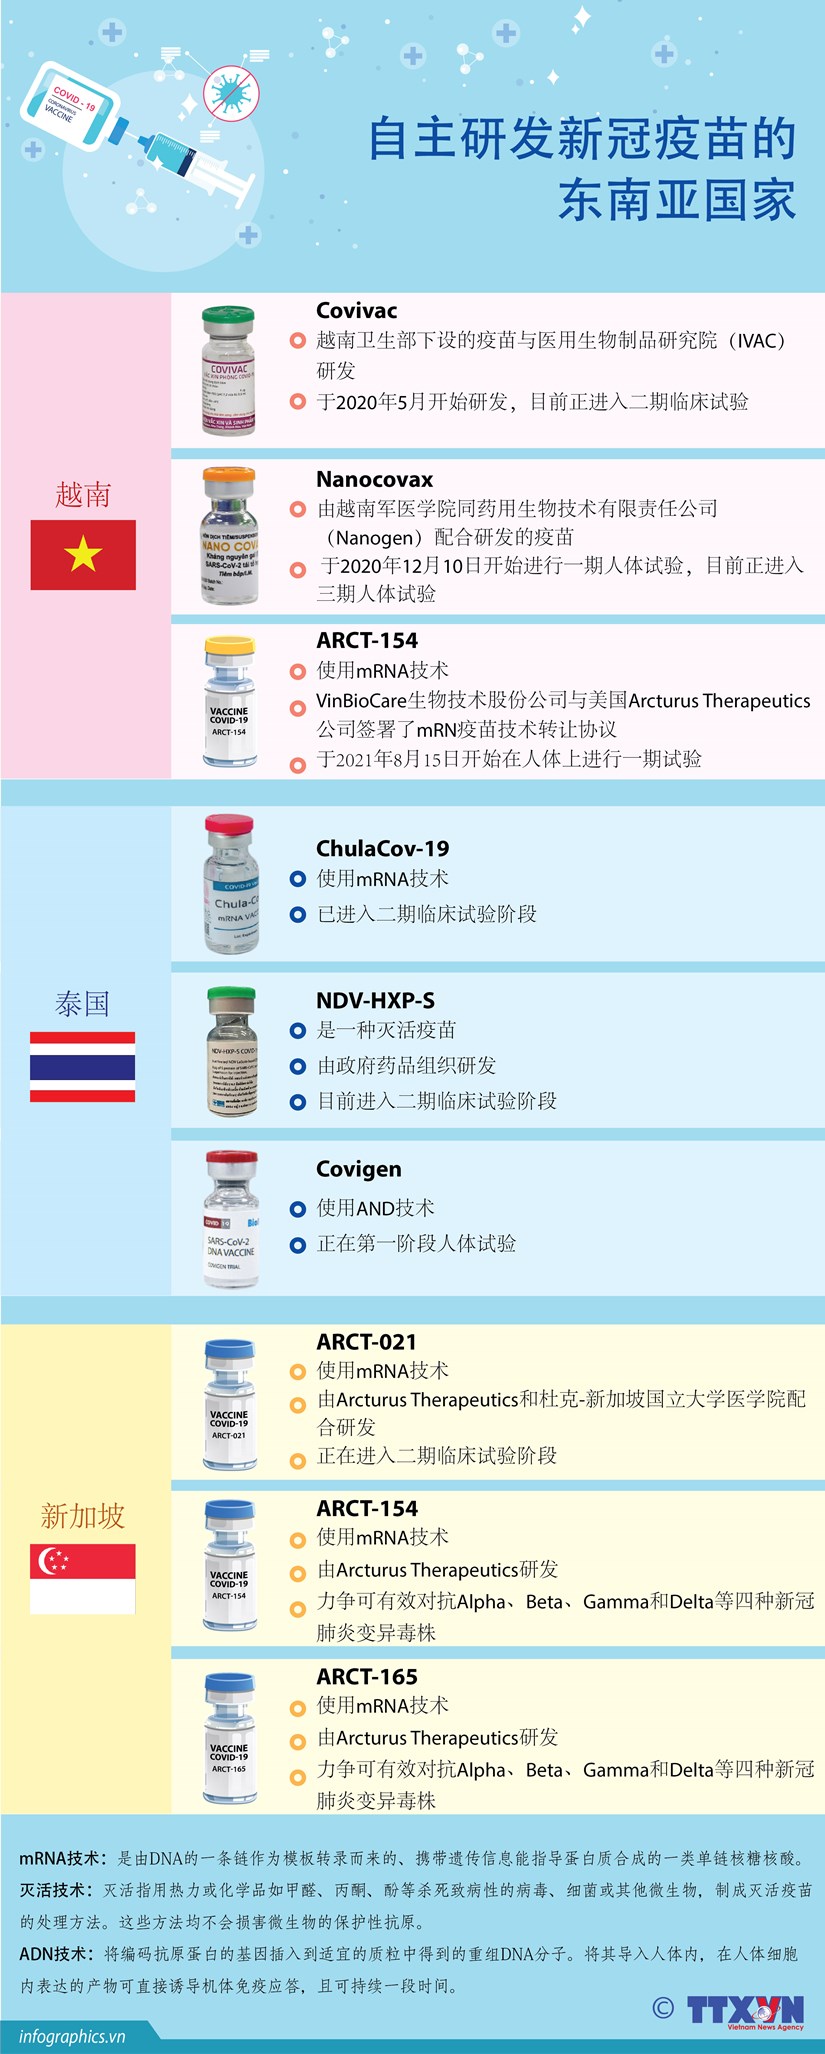 图表新闻：自主研发新冠疫苗的东南亚国家 hinh anh 1